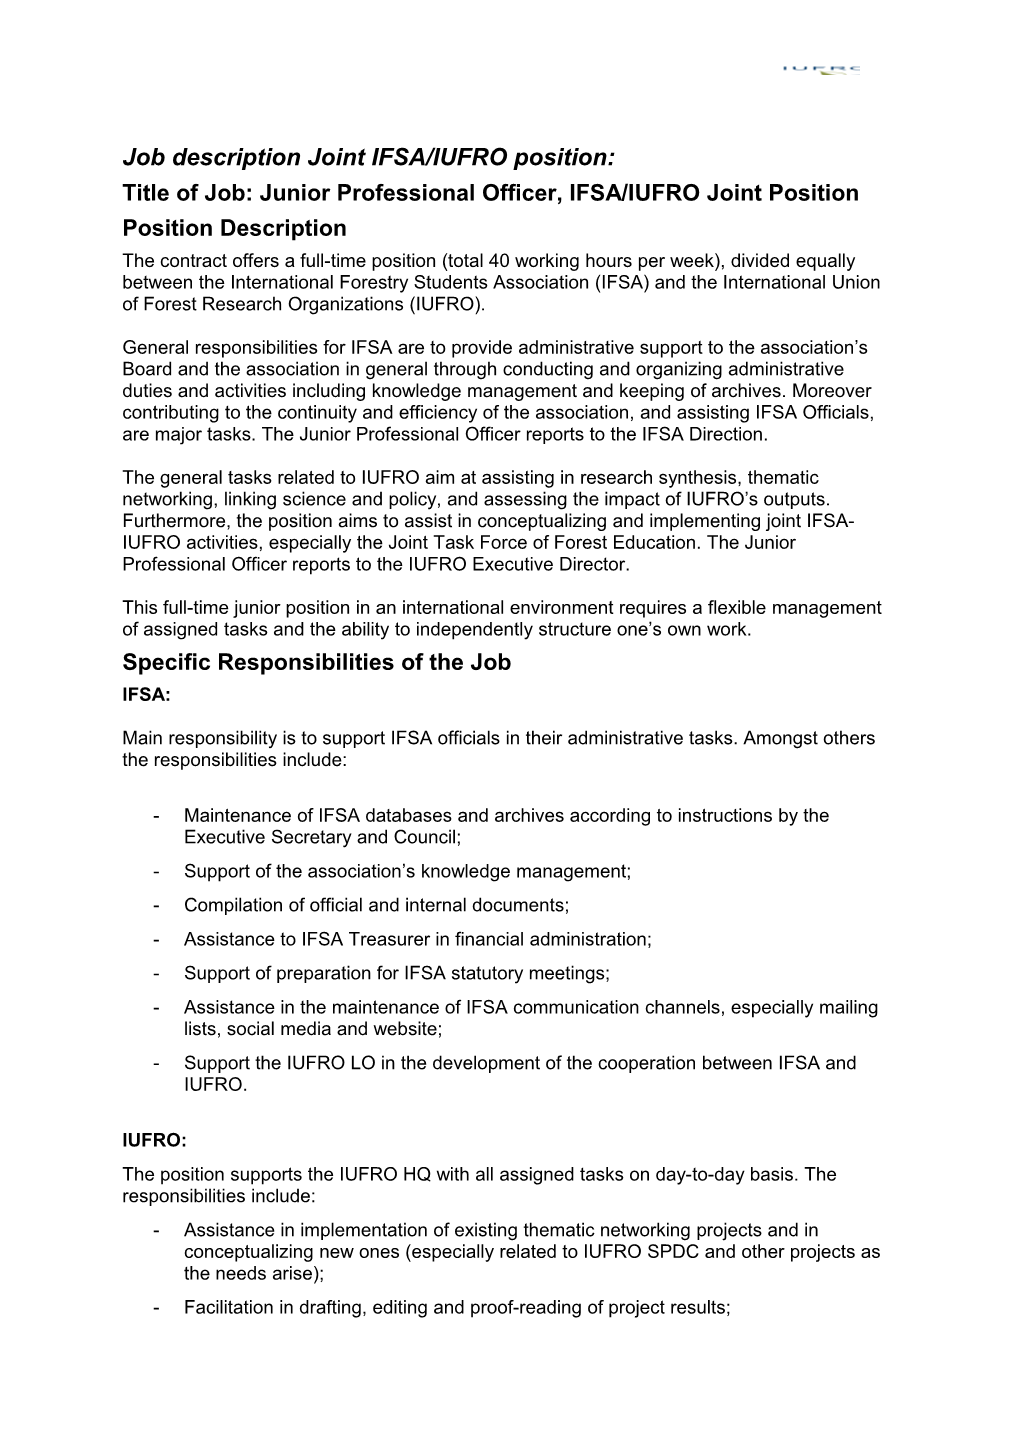 Job Description Joint IFSA/IUFRO Position